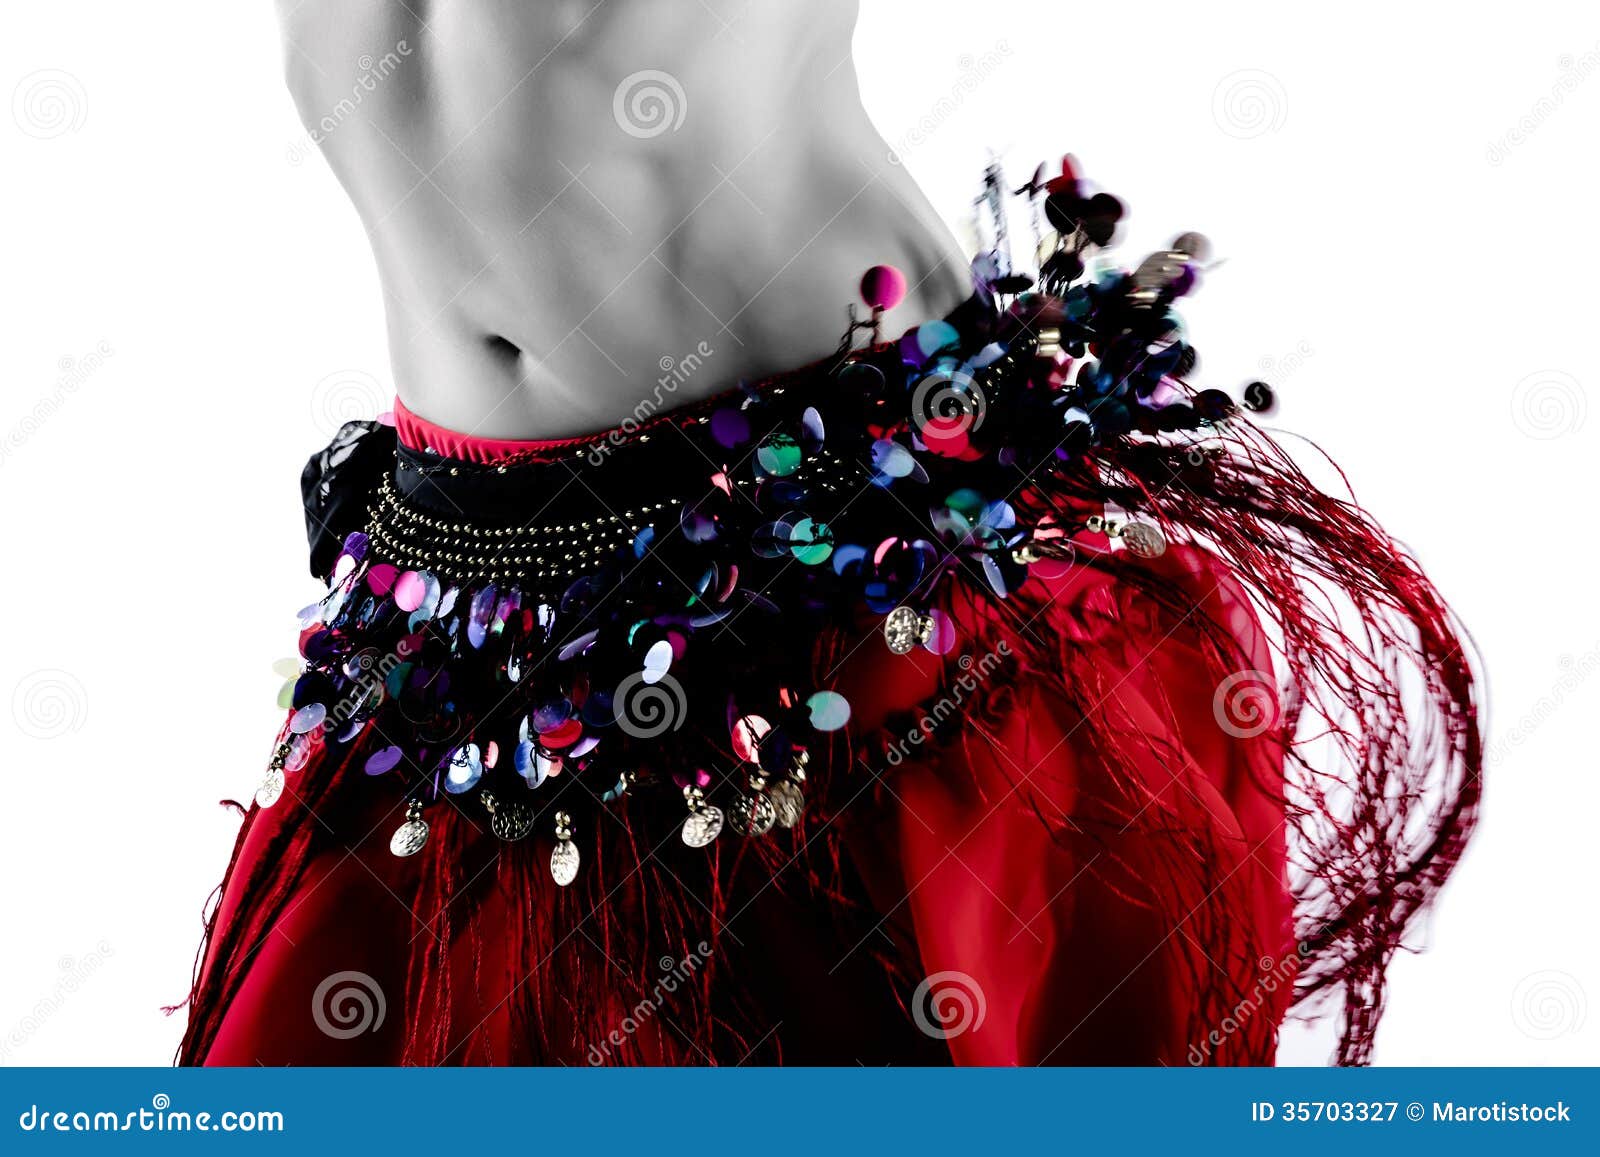 women belly dancer